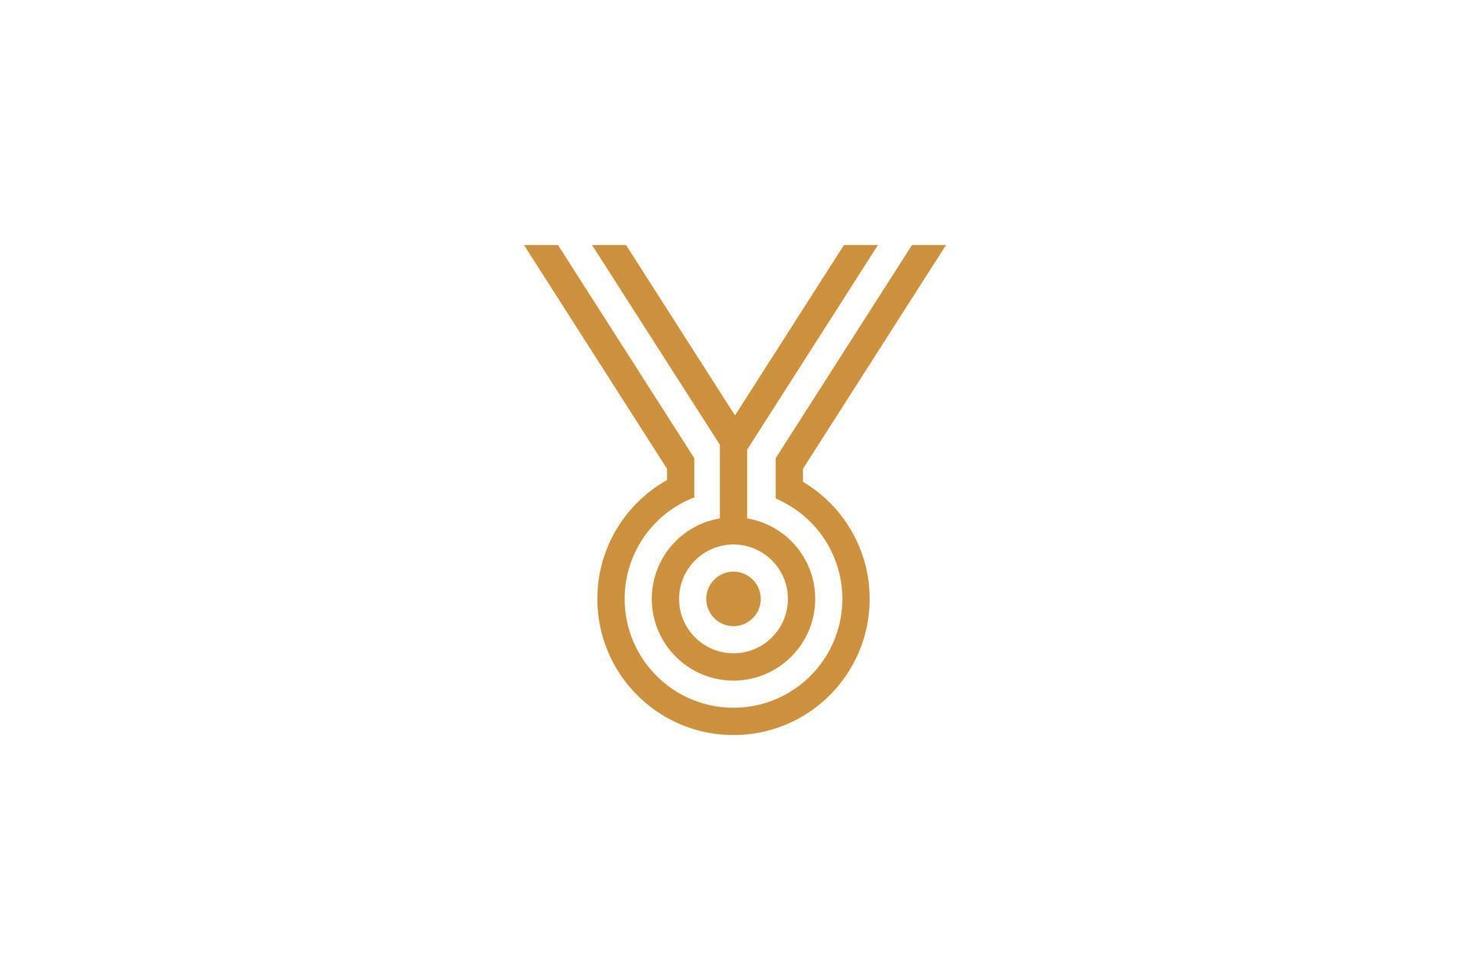 logo simple et moderne lettre y monoline vecteur